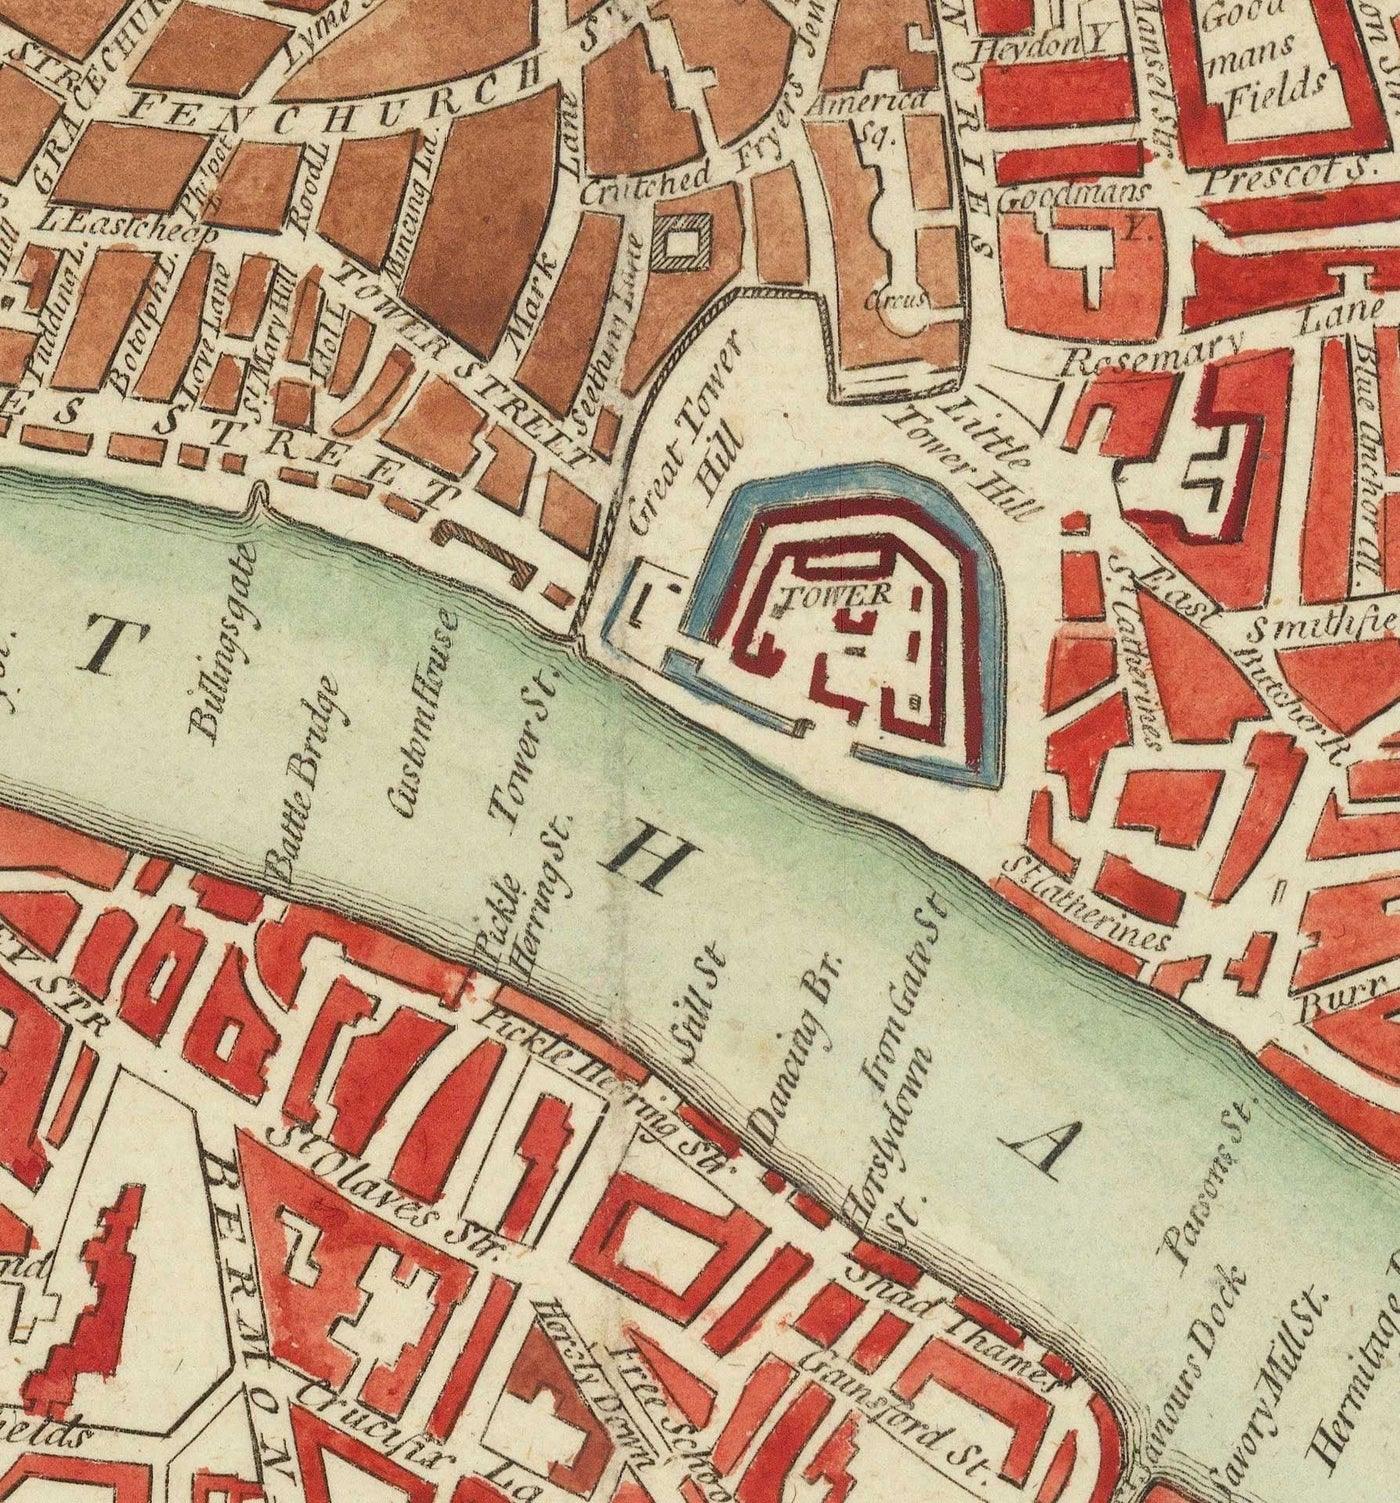 Rare ancienne carte de Londres par Hogg, 1784 - Westminster, ville de Londres, Soho, Holborn, Covent Garden,